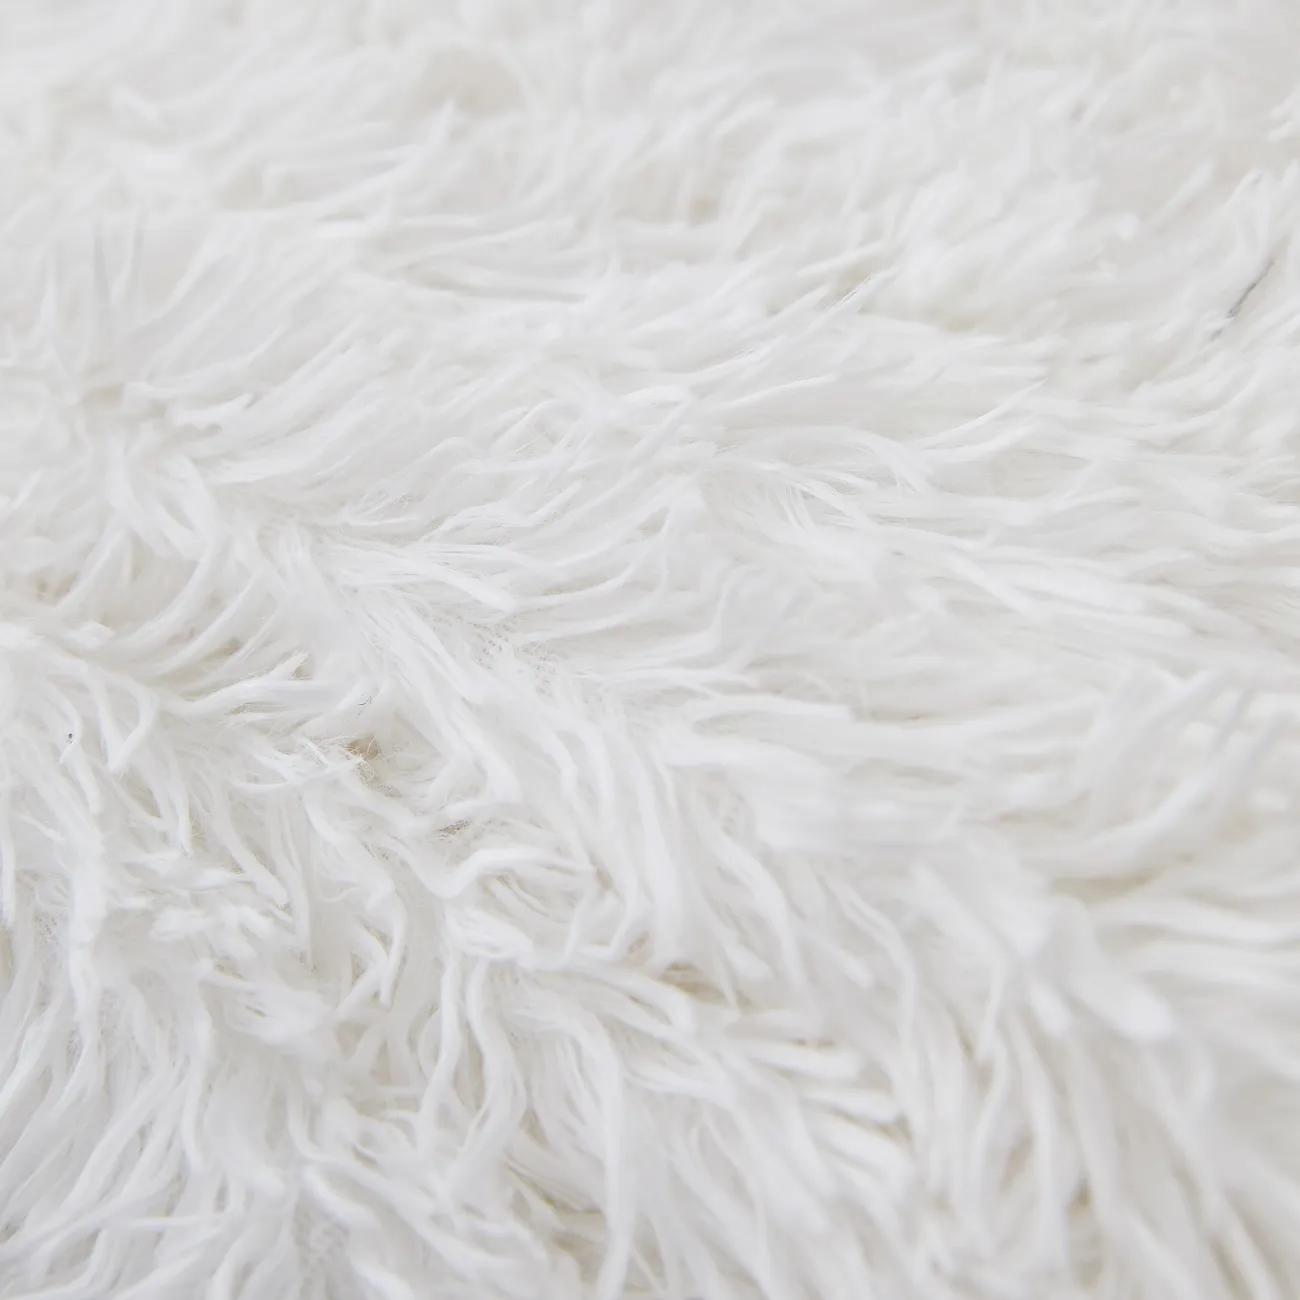 Couverture polaire PV blanche de qualité supérieure - Ultra-douce, durable, lavable en machine - parfaite pour le confort de la maison et la décoration élégante Blanc big image 1